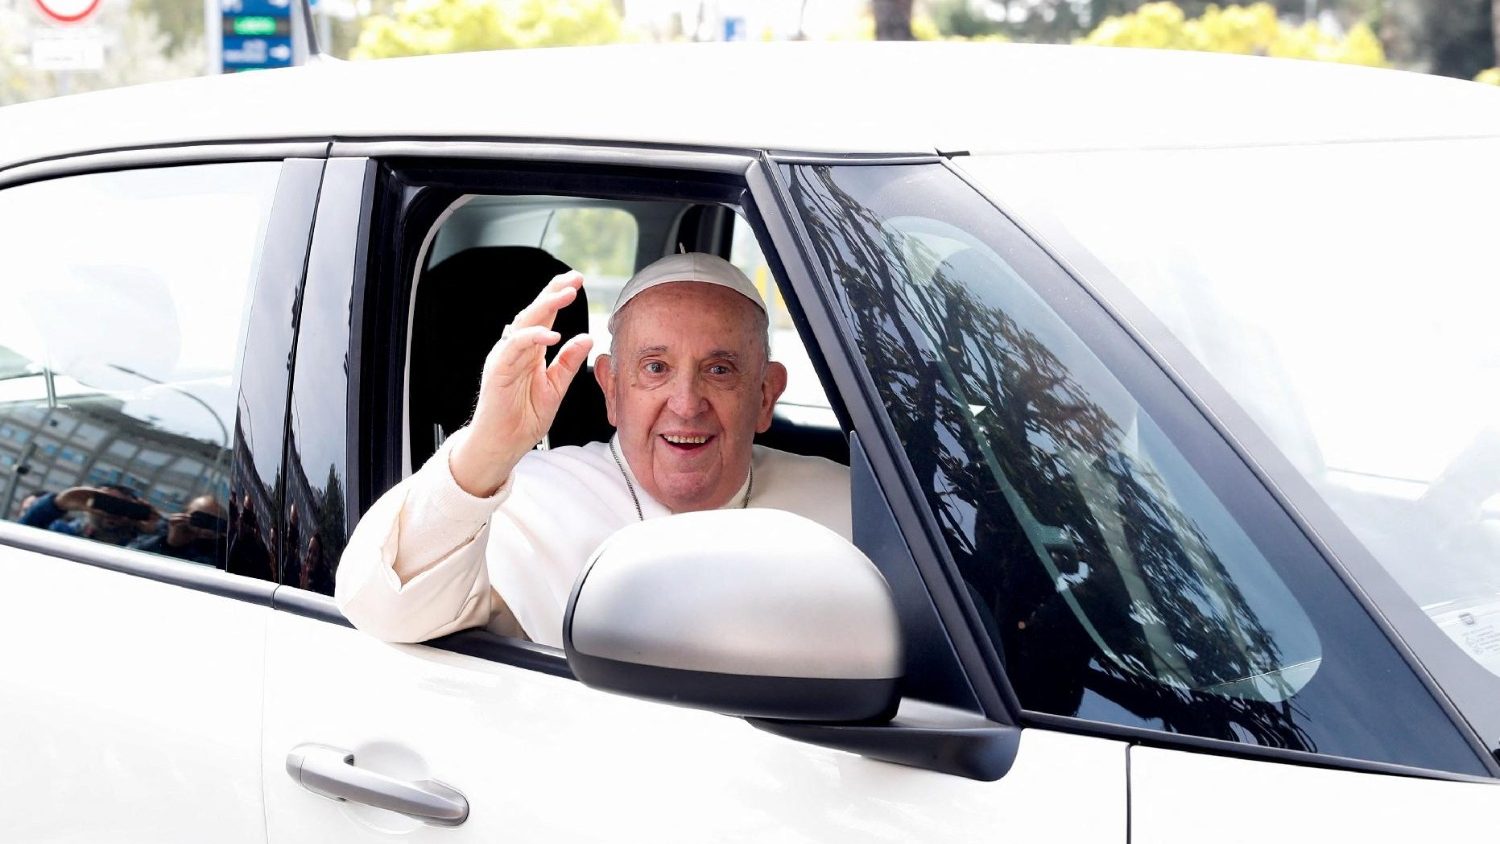 يعود البابا فرانسيس إلى المنزل بعد إقامة قصيرة في المستشفى